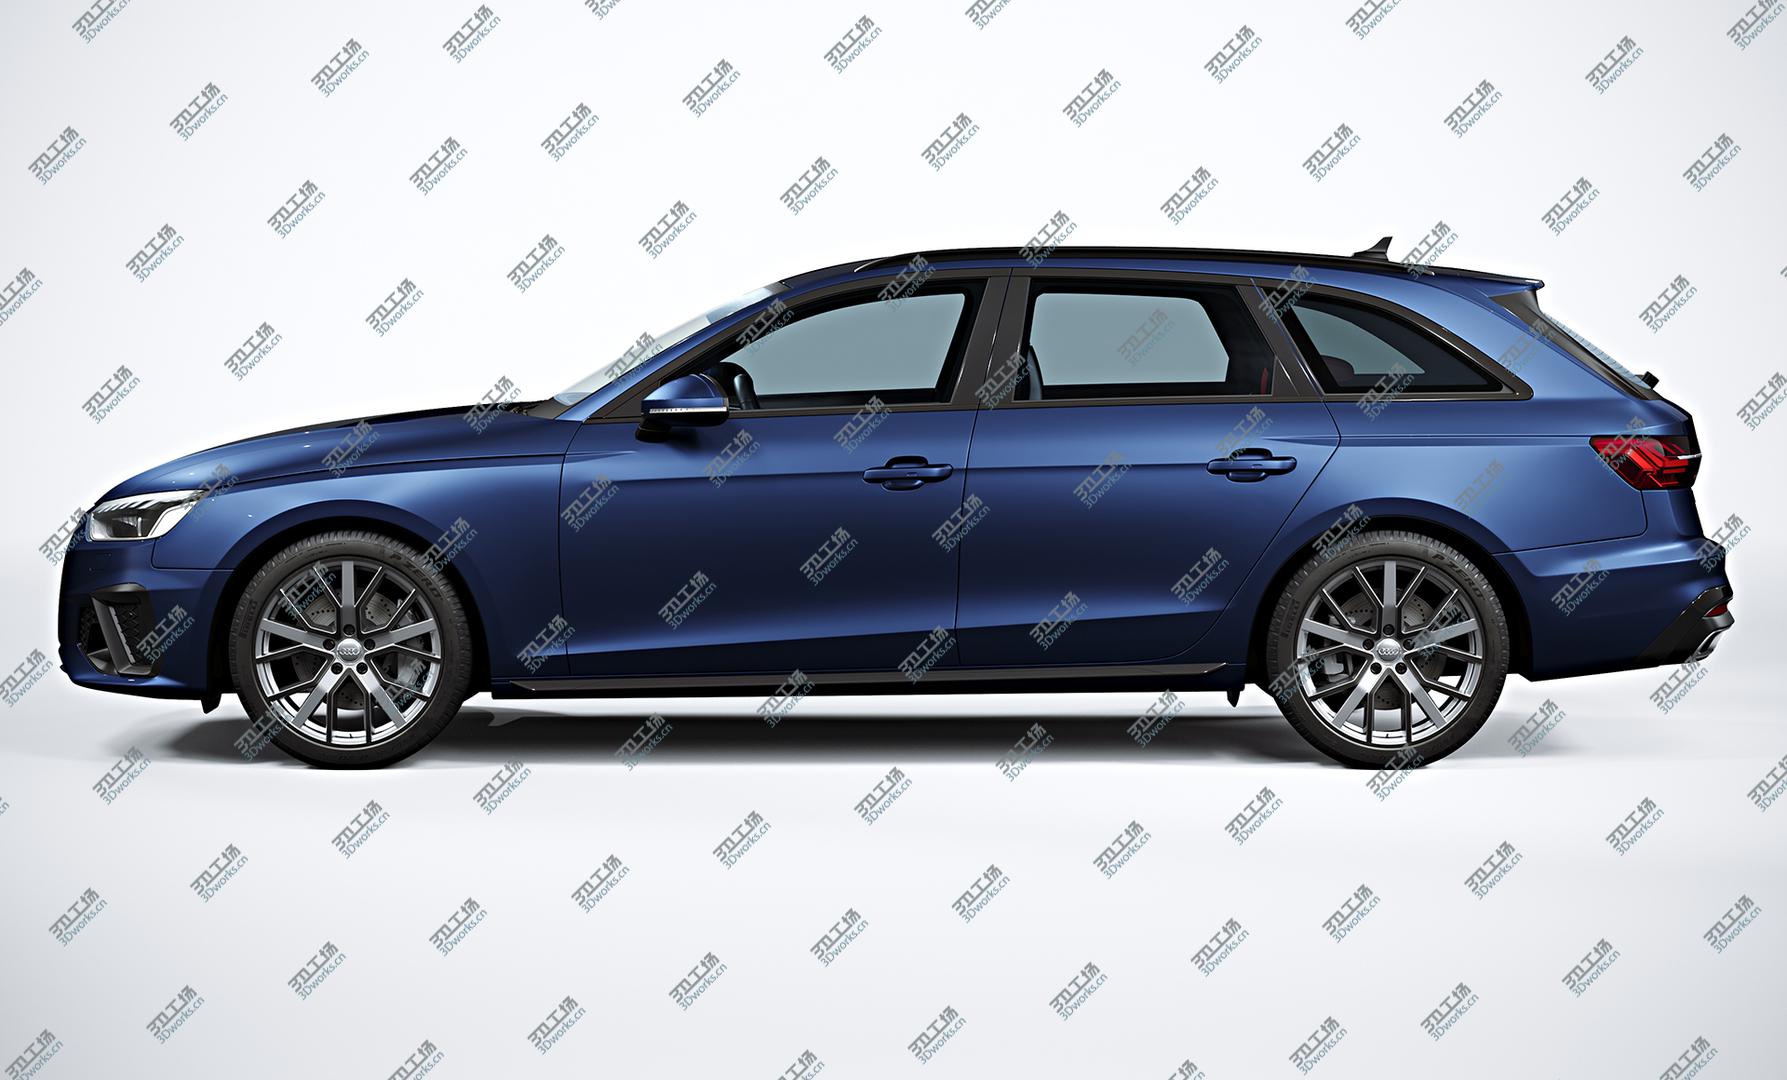 images/goods_img/202104021/3D 2020 Audi A4 Avant model/4.jpg